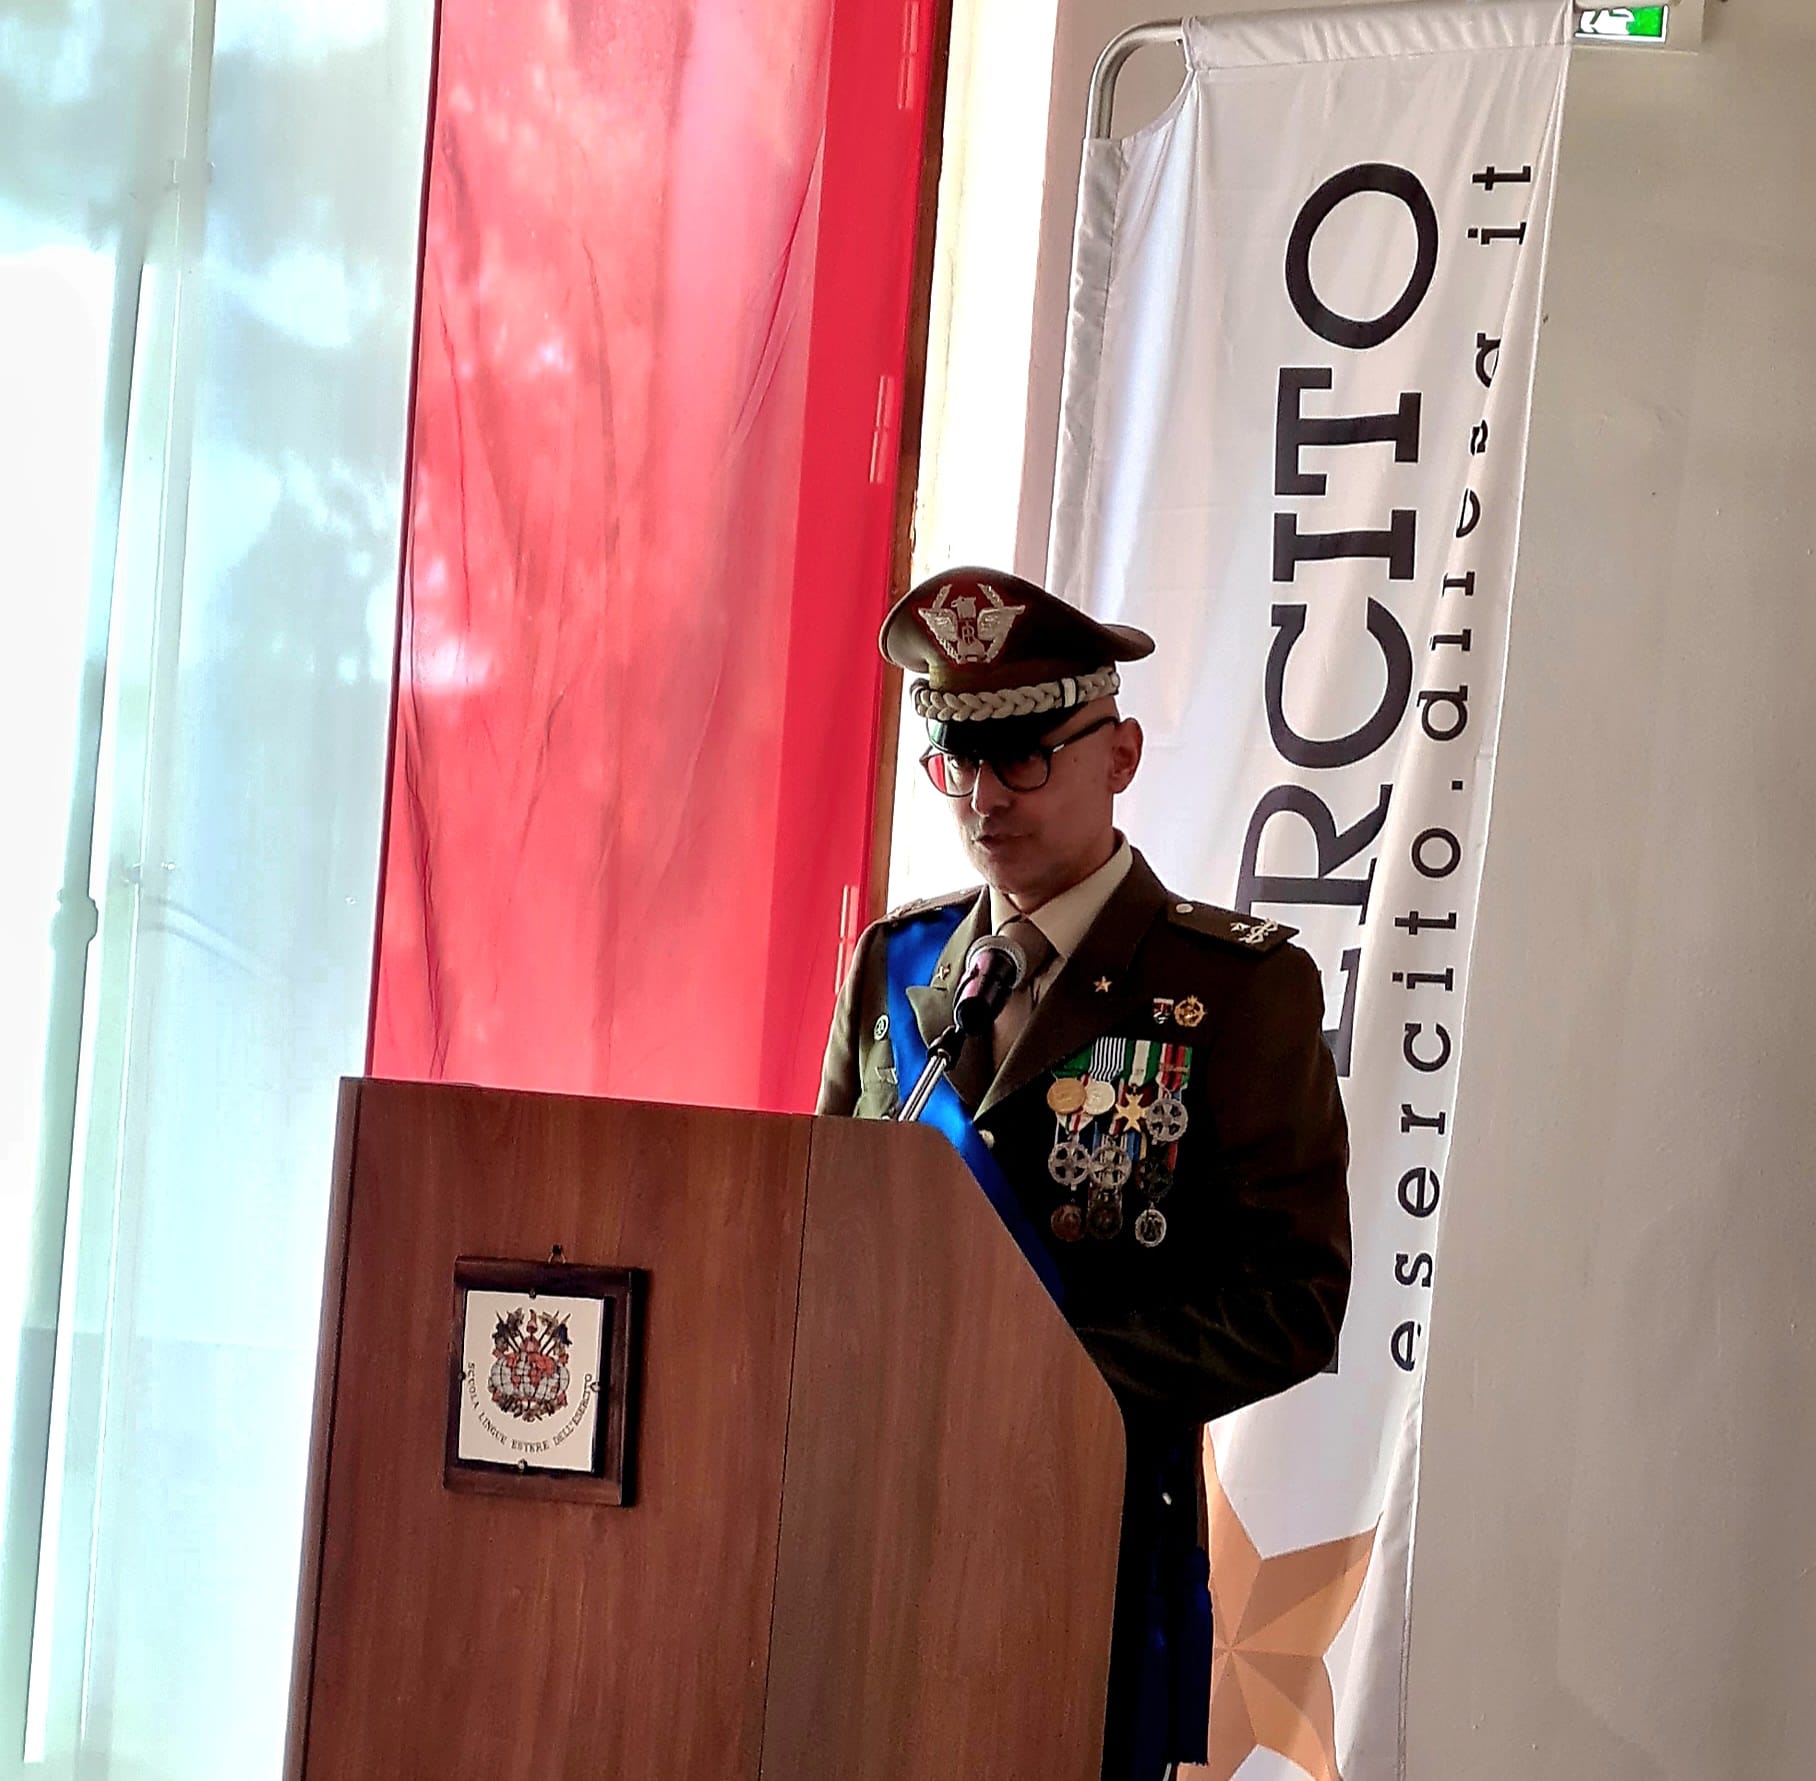 Eventi - Cerimonia di avvicendamento del Comandante alla SLEE, la Scuola Lingue Estere dell'Esercito